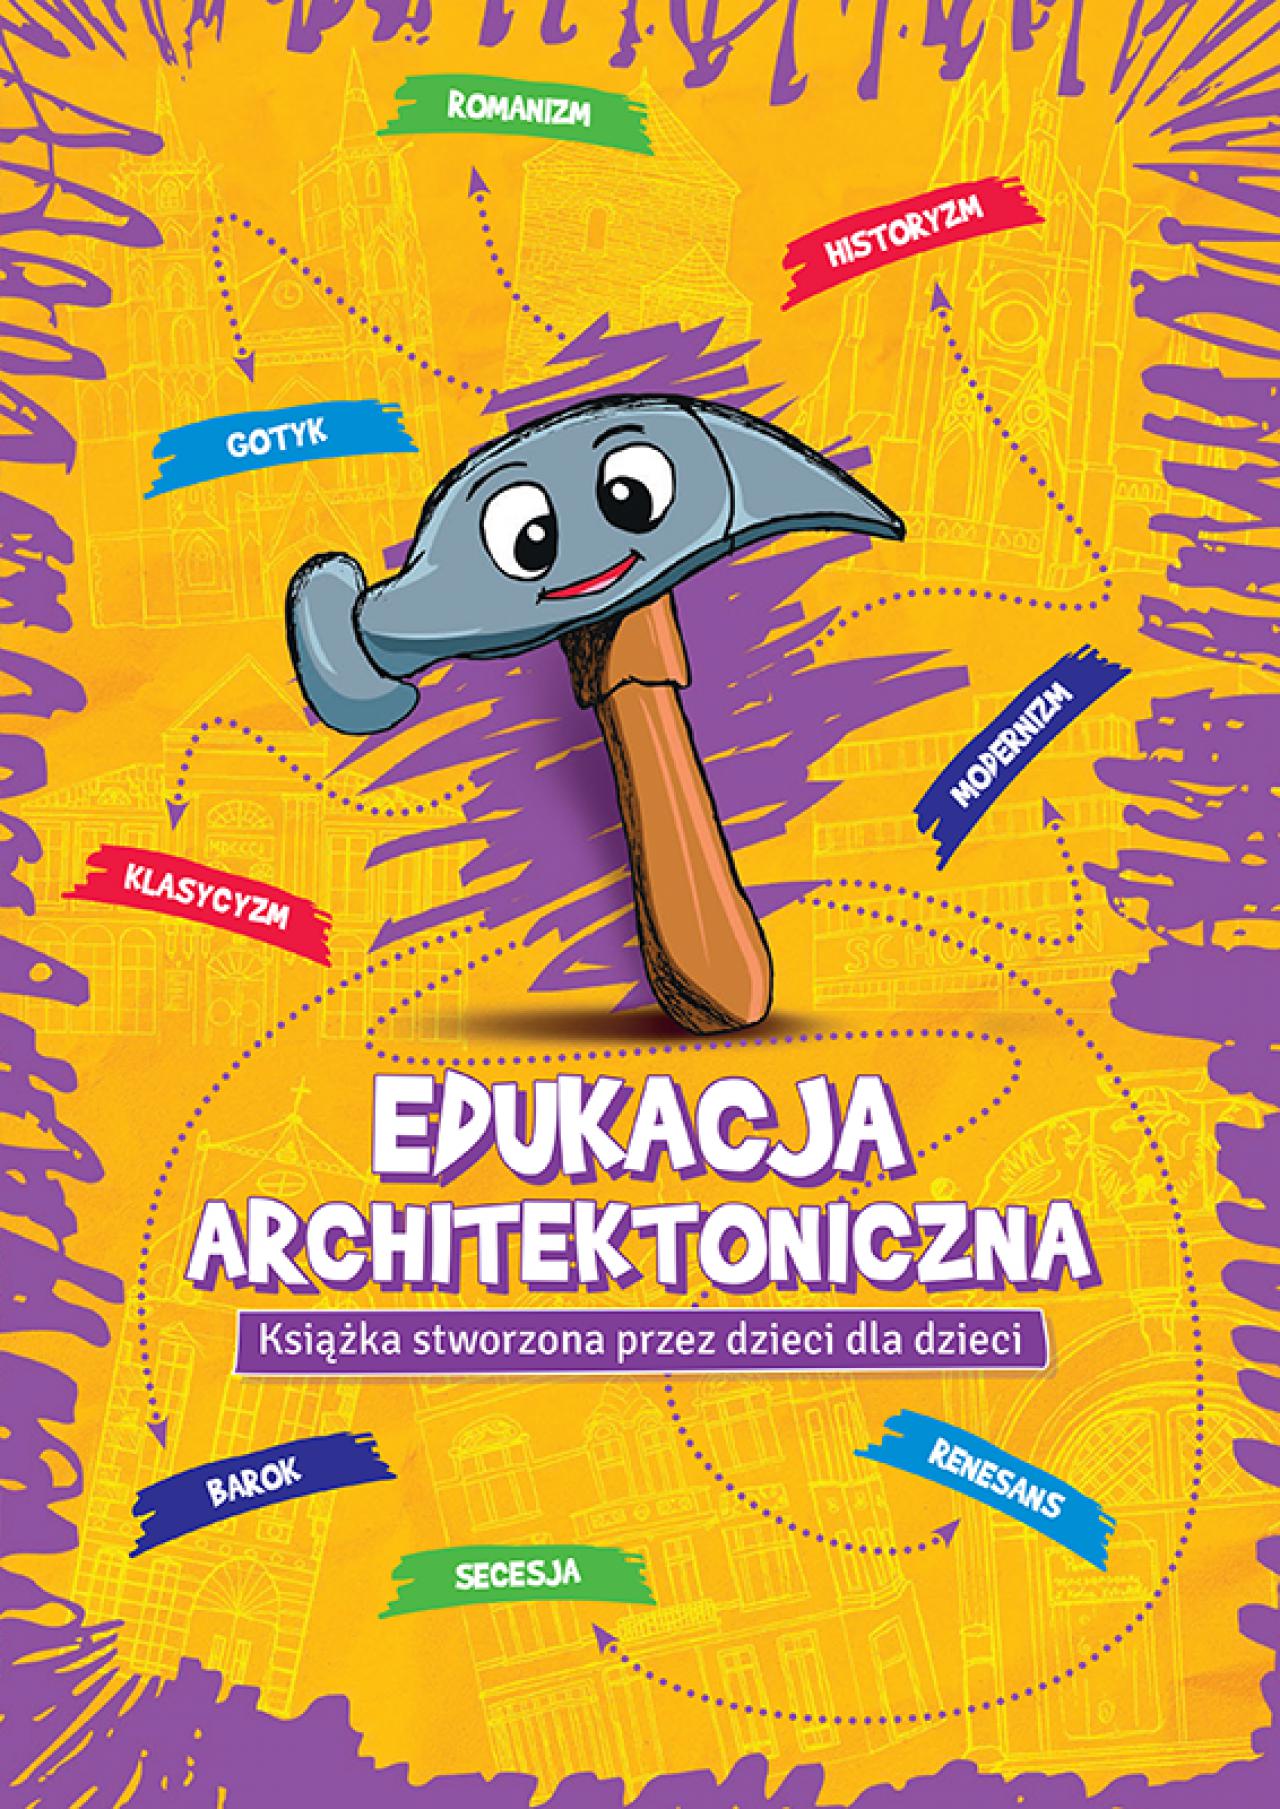 Uczniowie Aglomeracji Wałbrzyskiej stworzyli książeczkę o architekturze